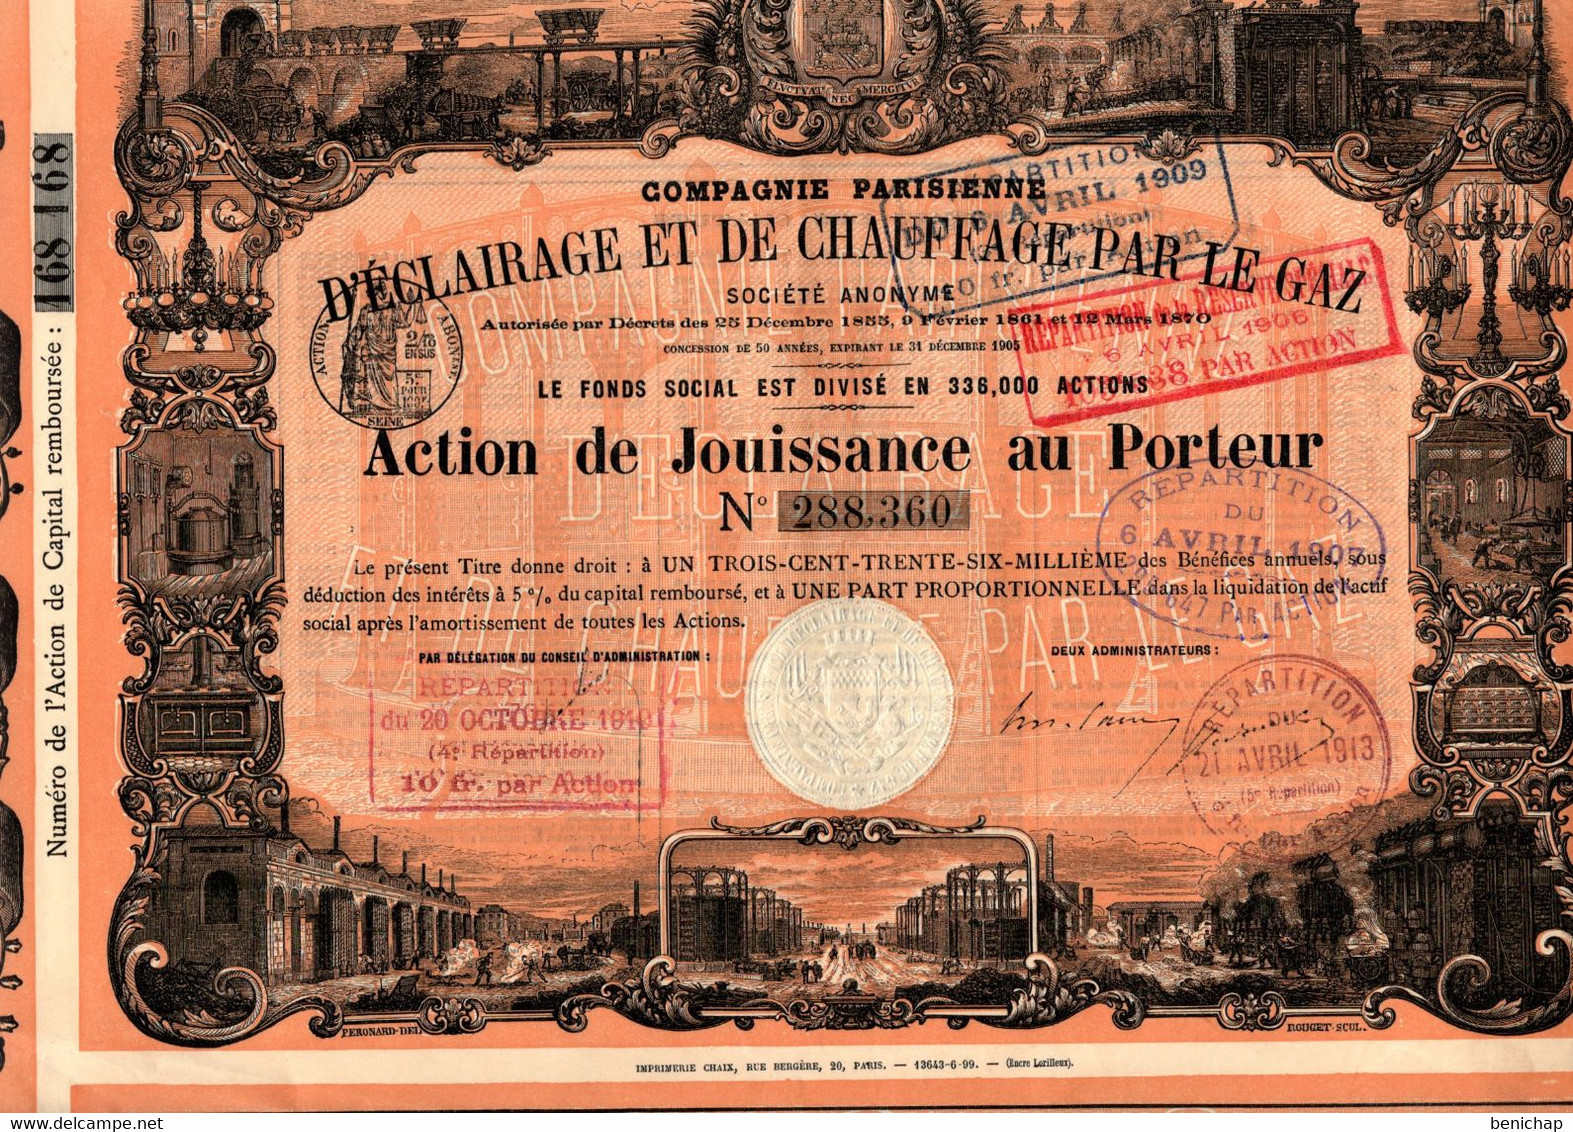 Action De Jouissance Au Porteur - Compagnie Parisienne D'Eclairage Et De Chauffage Par Le Gaz S.A. - Paris 1870. - Electricity & Gas